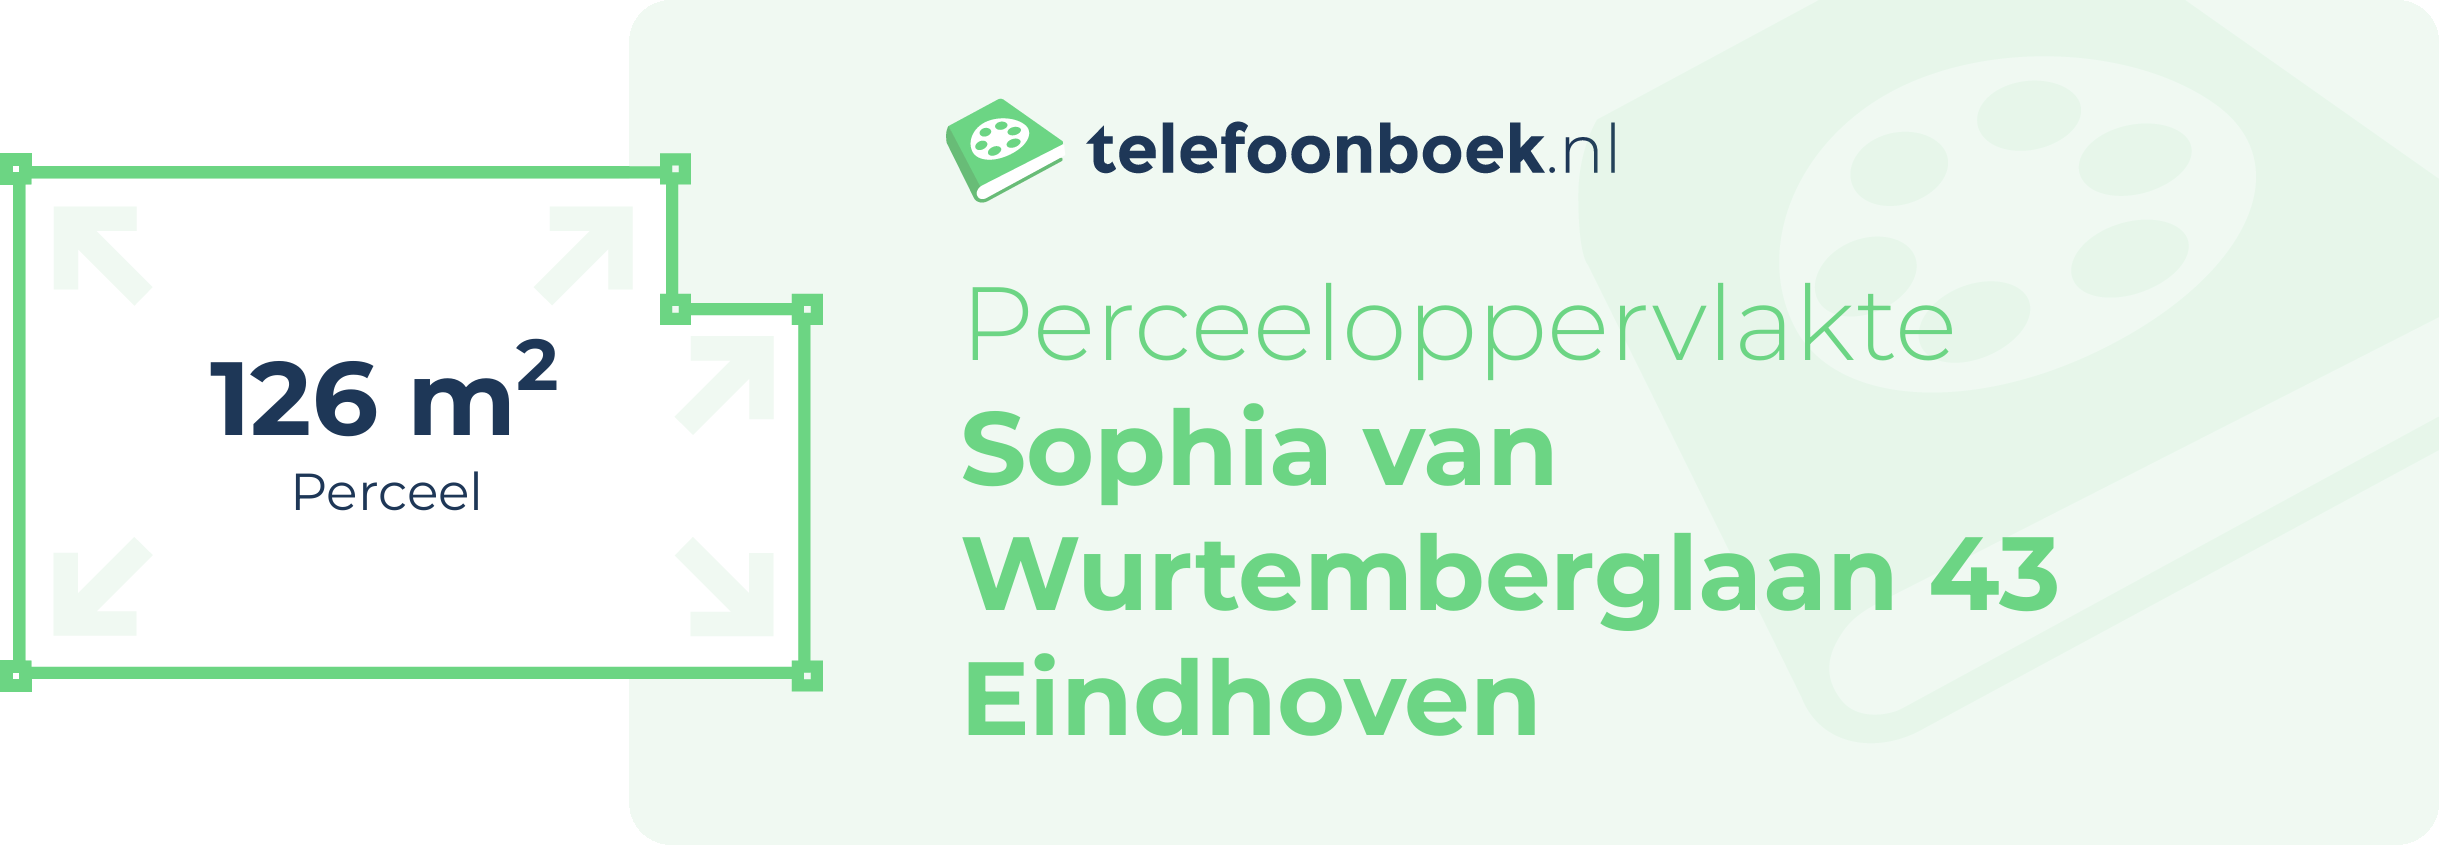 Perceeloppervlakte Sophia Van Wurtemberglaan 43 Eindhoven